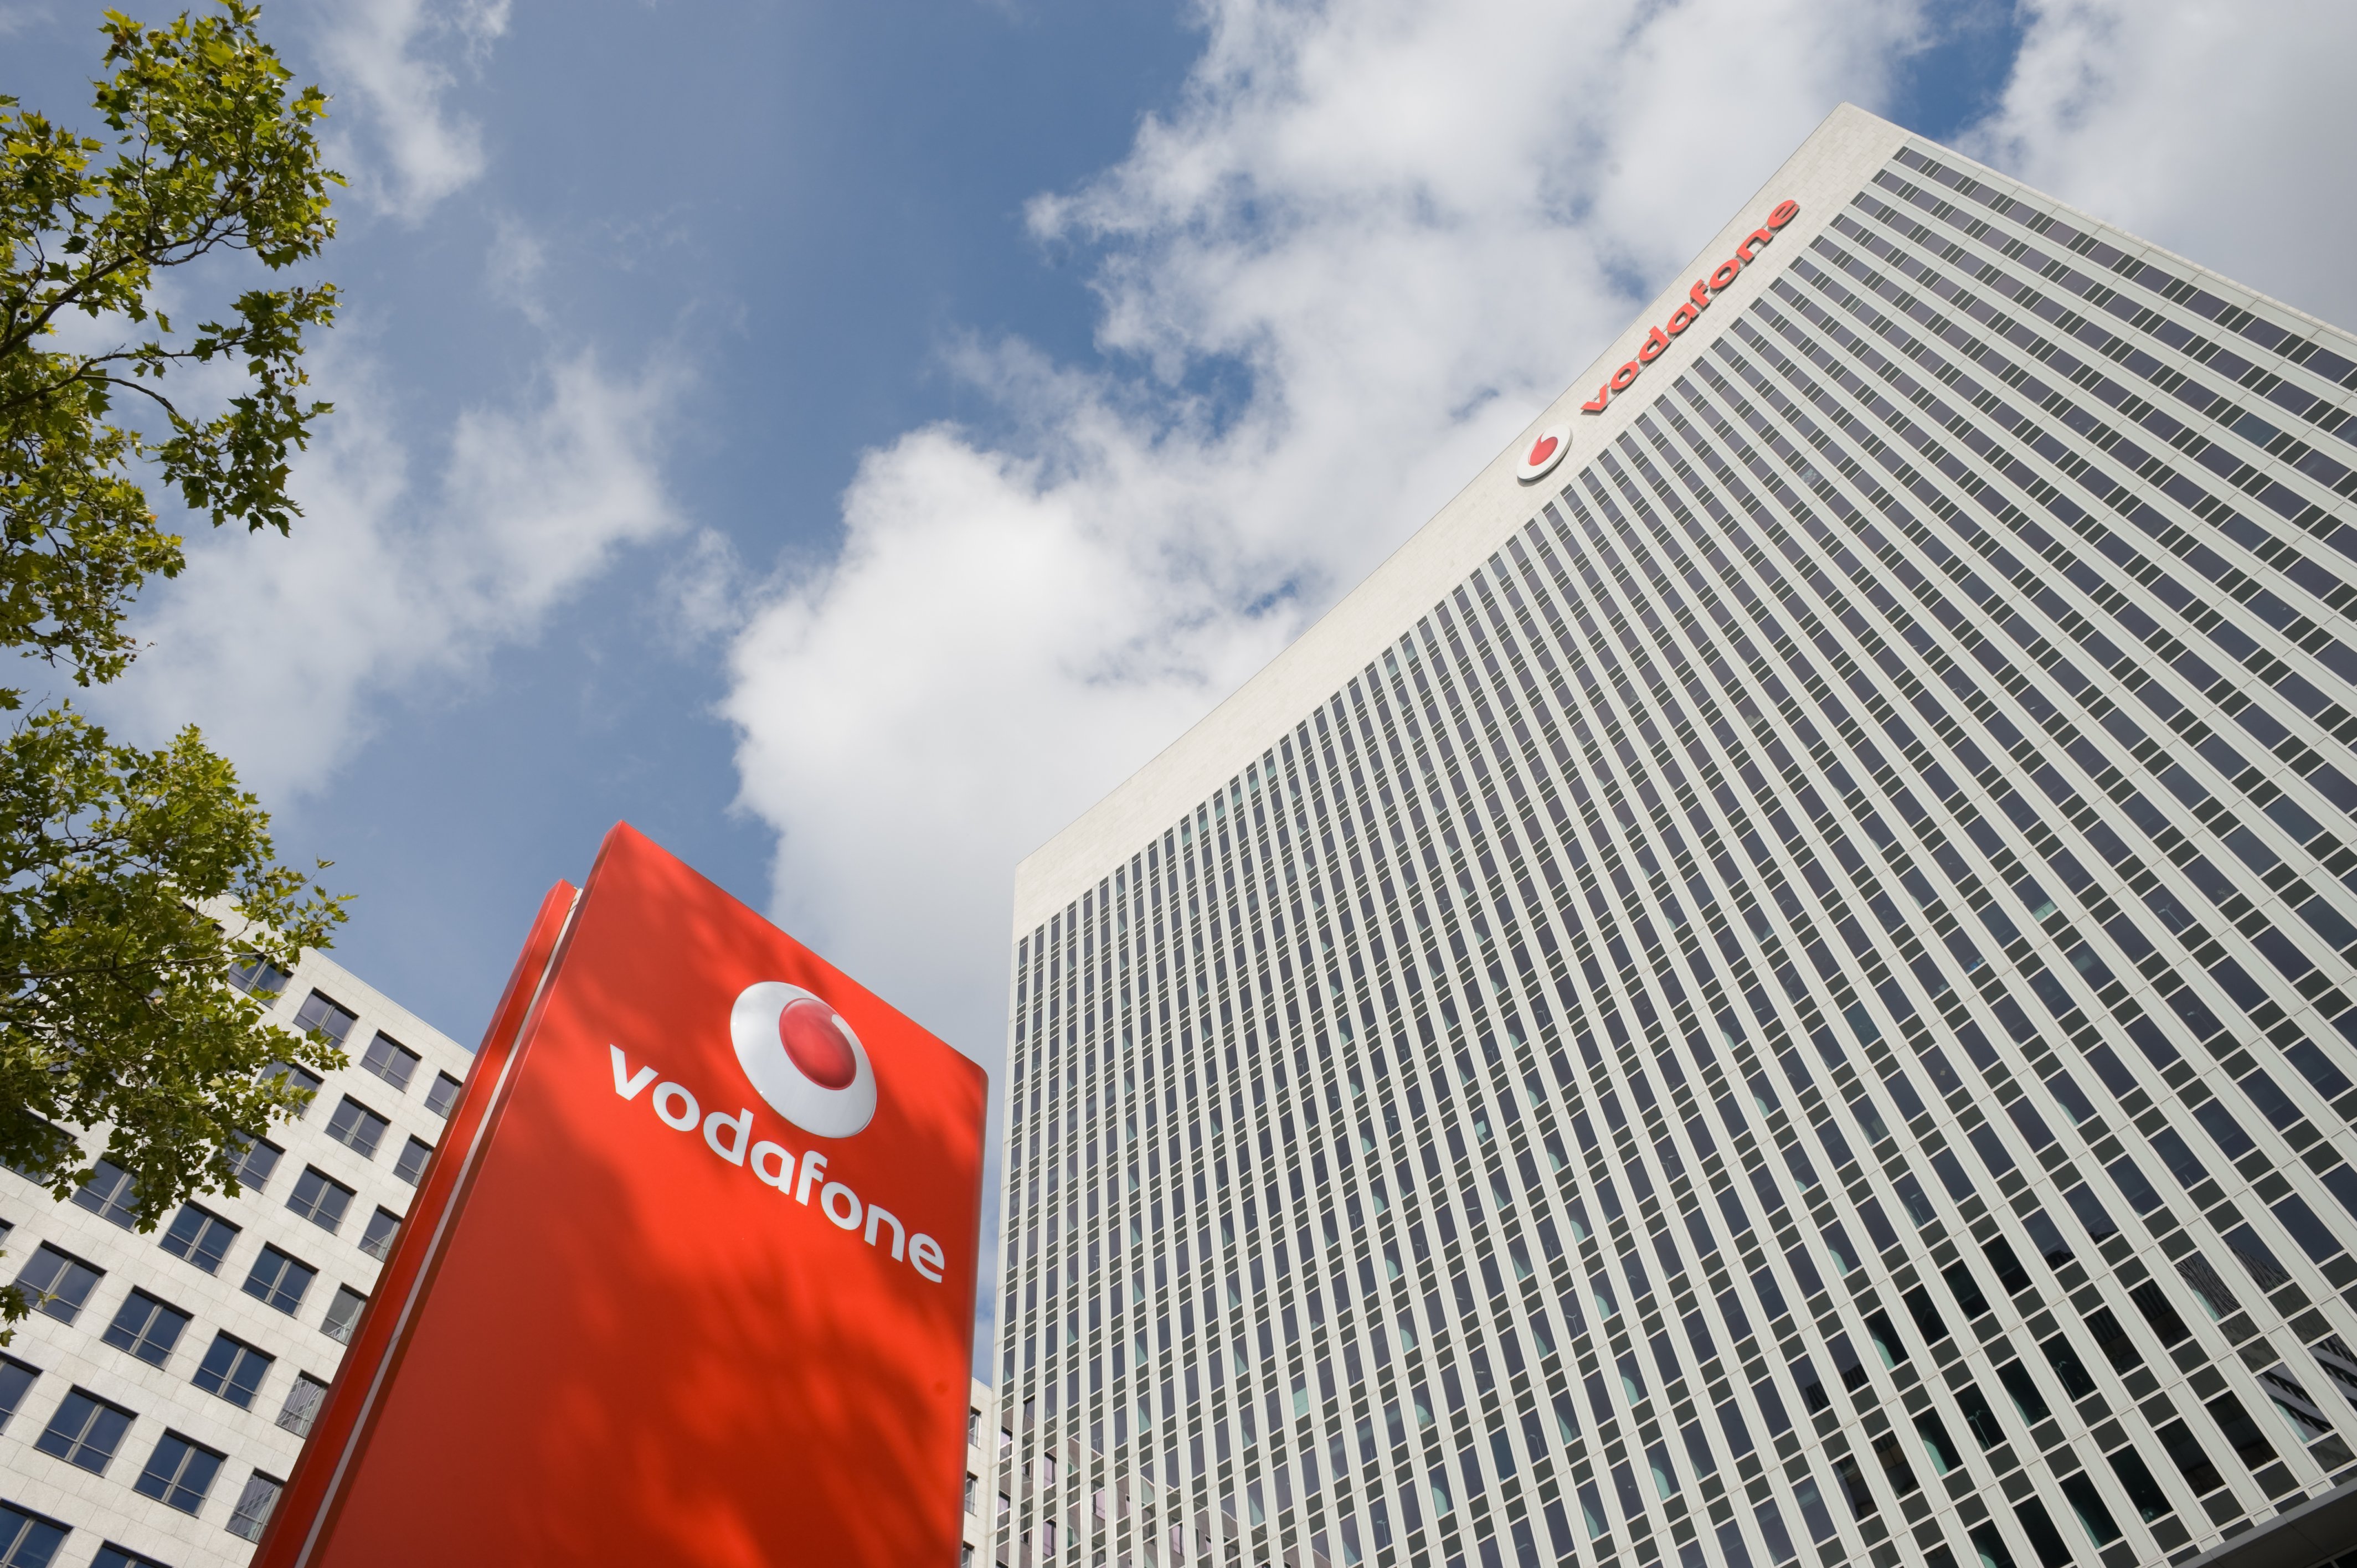 Vodafone UK prepares for 3G shutdown in 2023